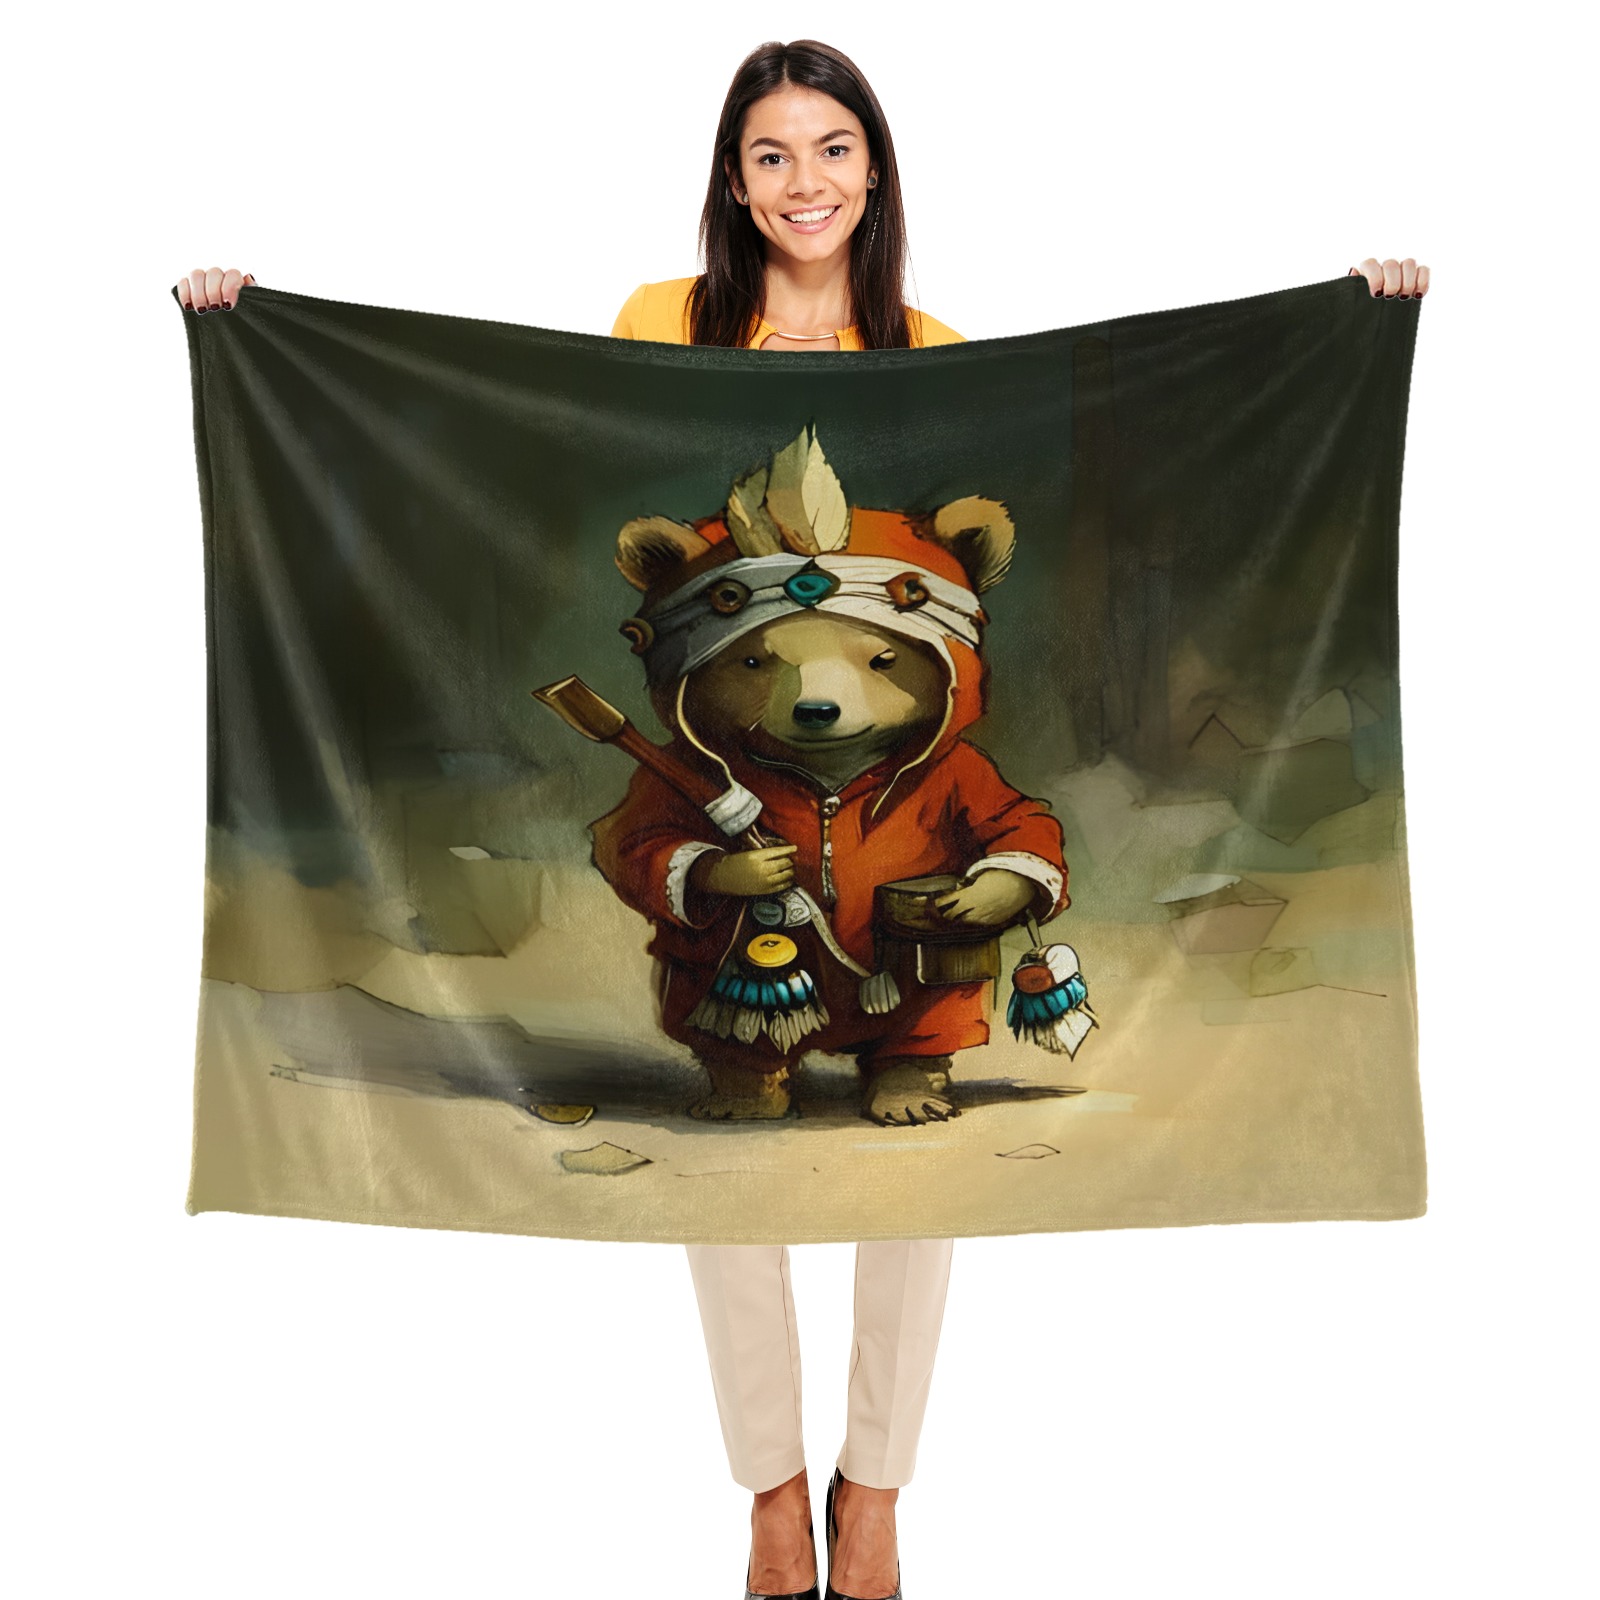 Little Bears 1 Ultra-Soft Micro Fleece Blanket 50"x40"